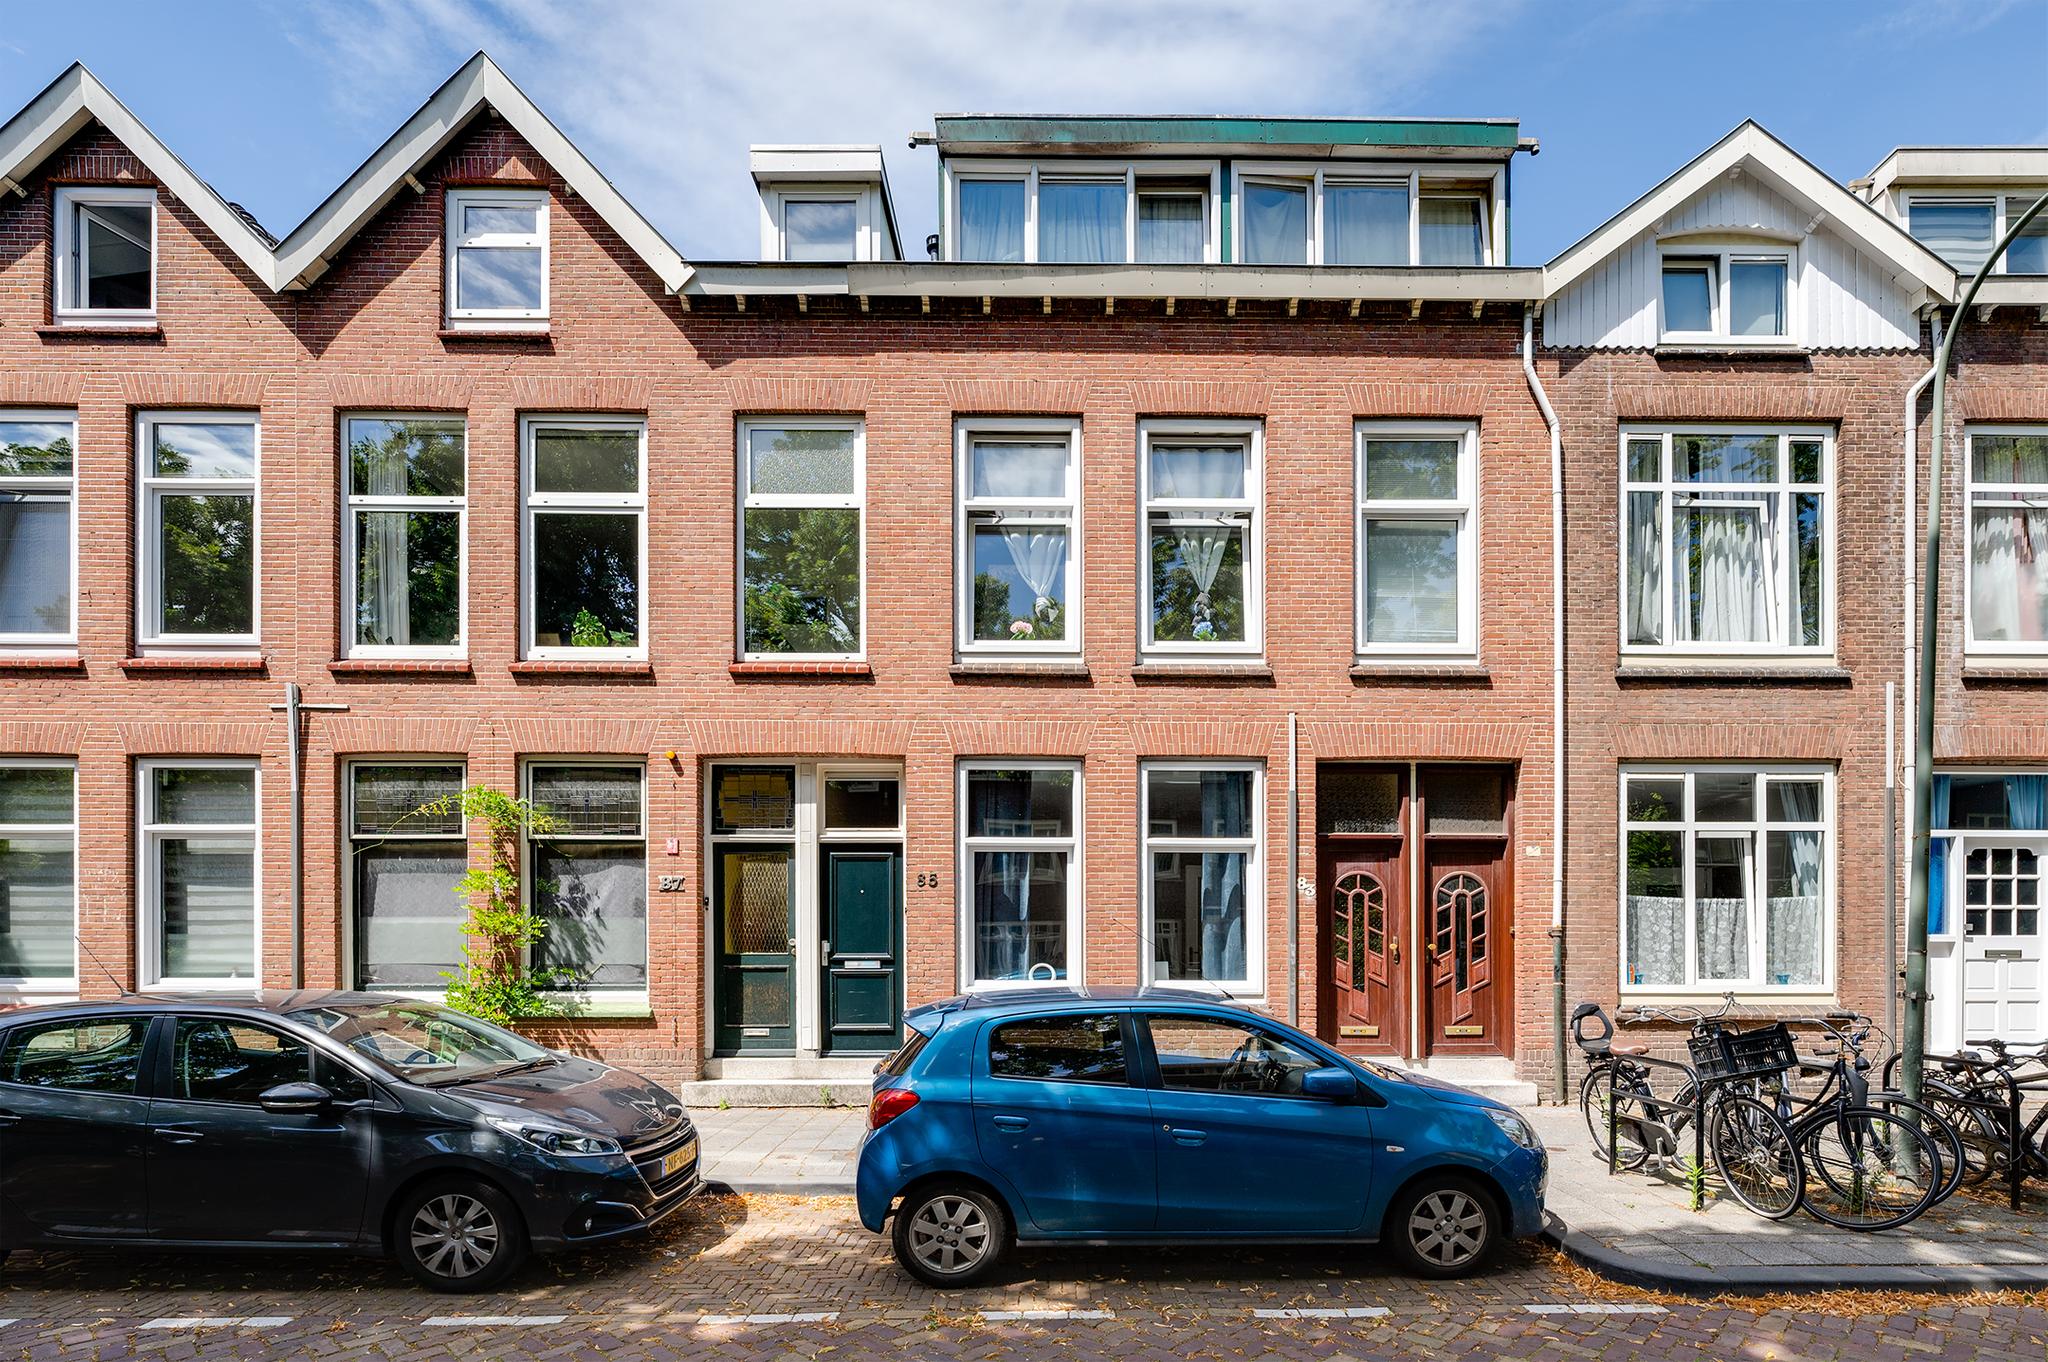 Foto Riouwstraat 85 – Dordrecht